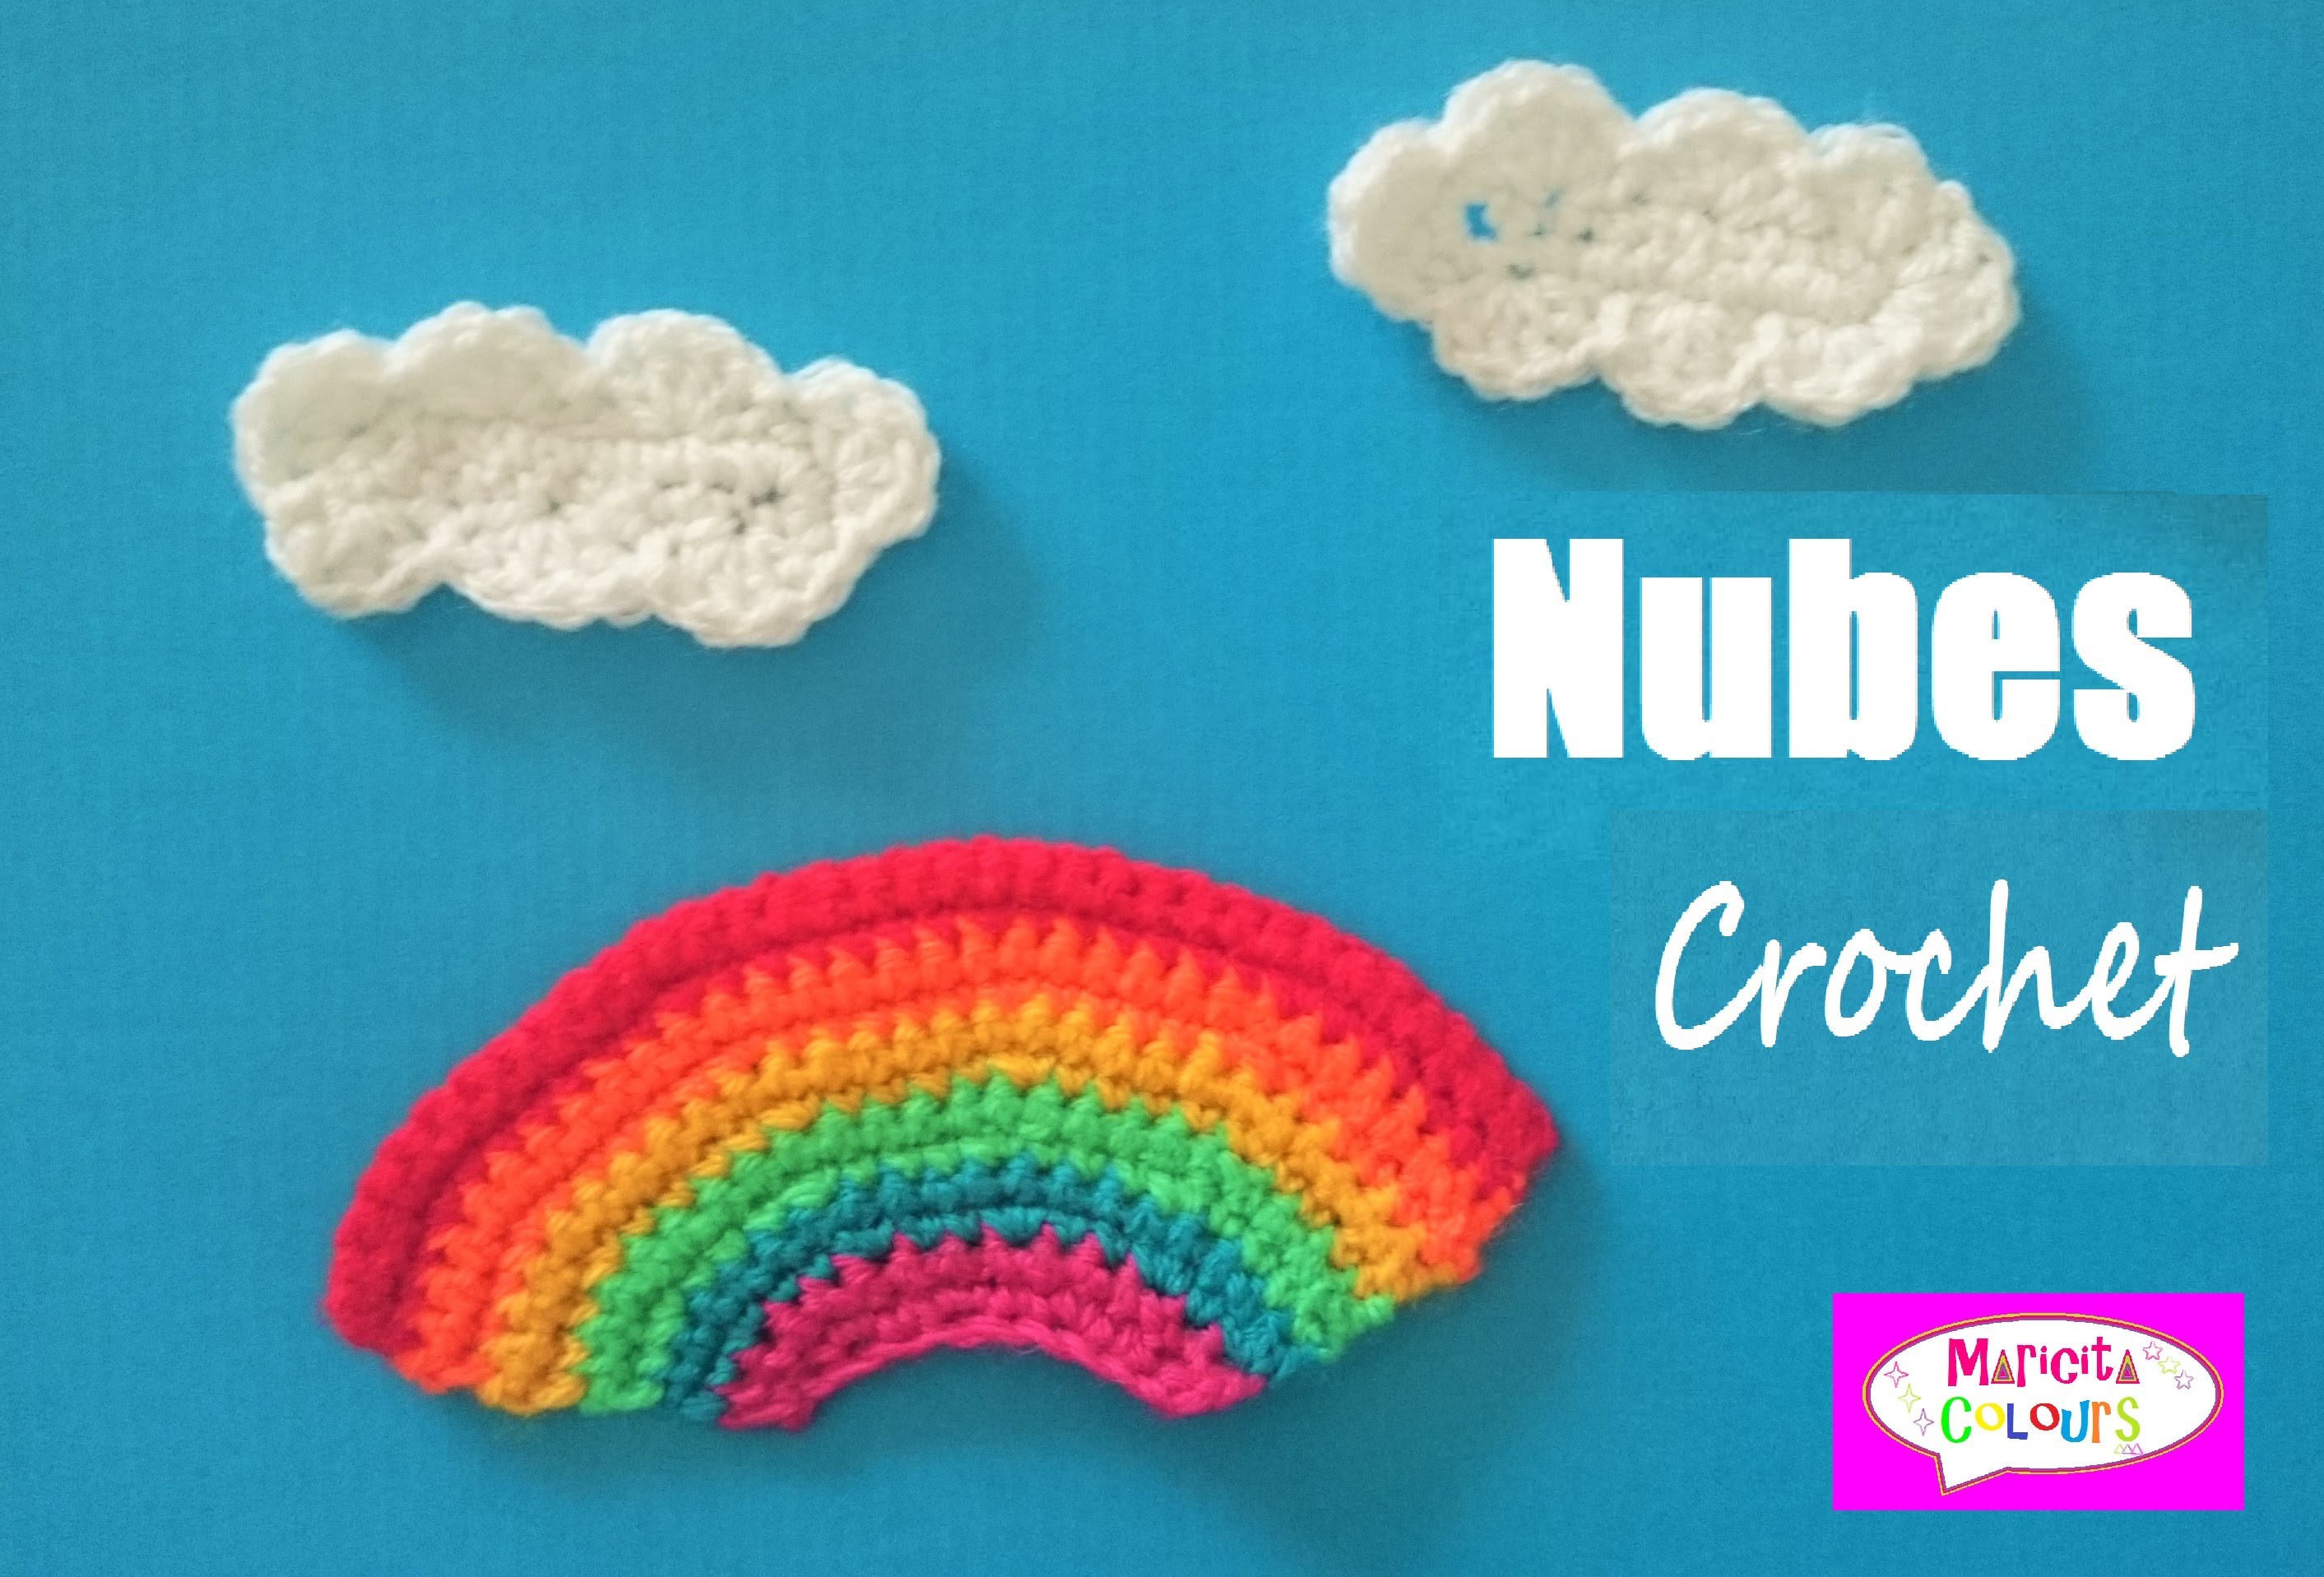 Nubes Aplicación a Crochet Tutorial por Maricita Colours